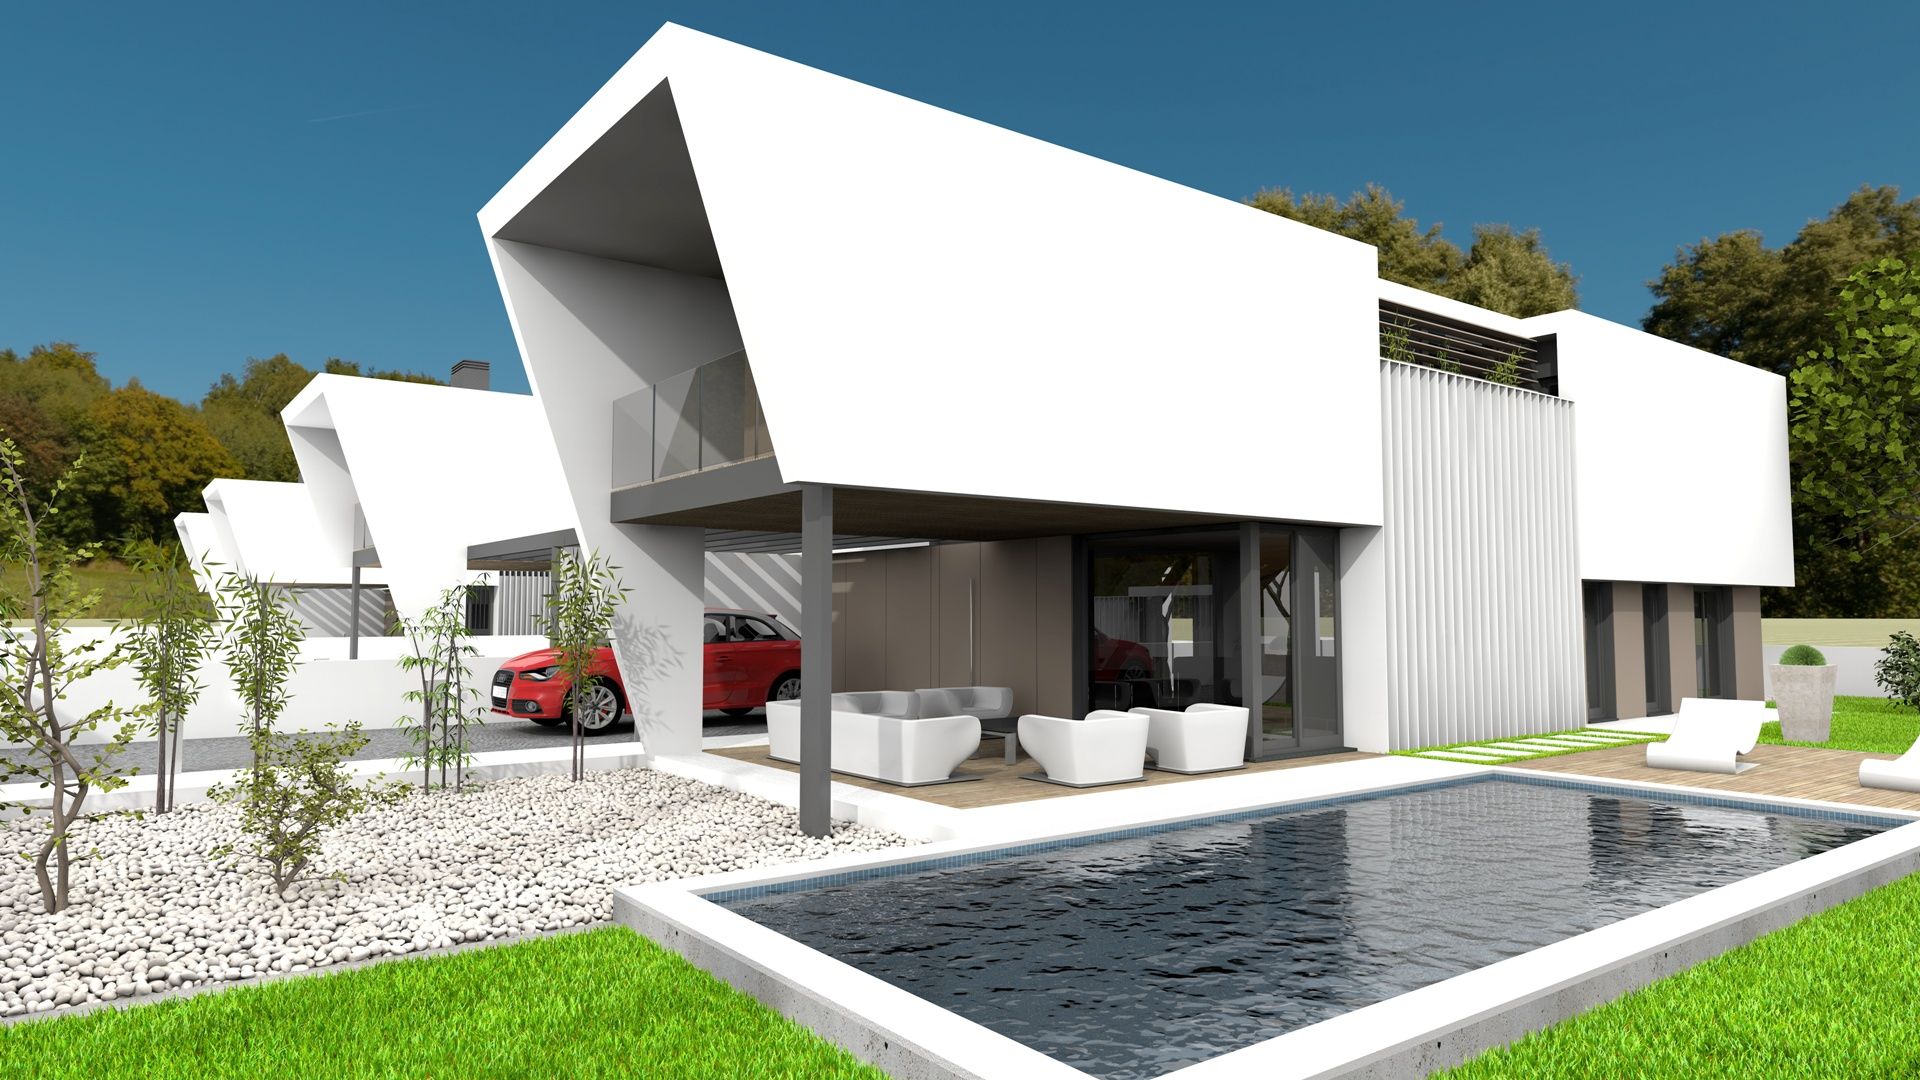  - Коллекции и модели модульных домов из стали